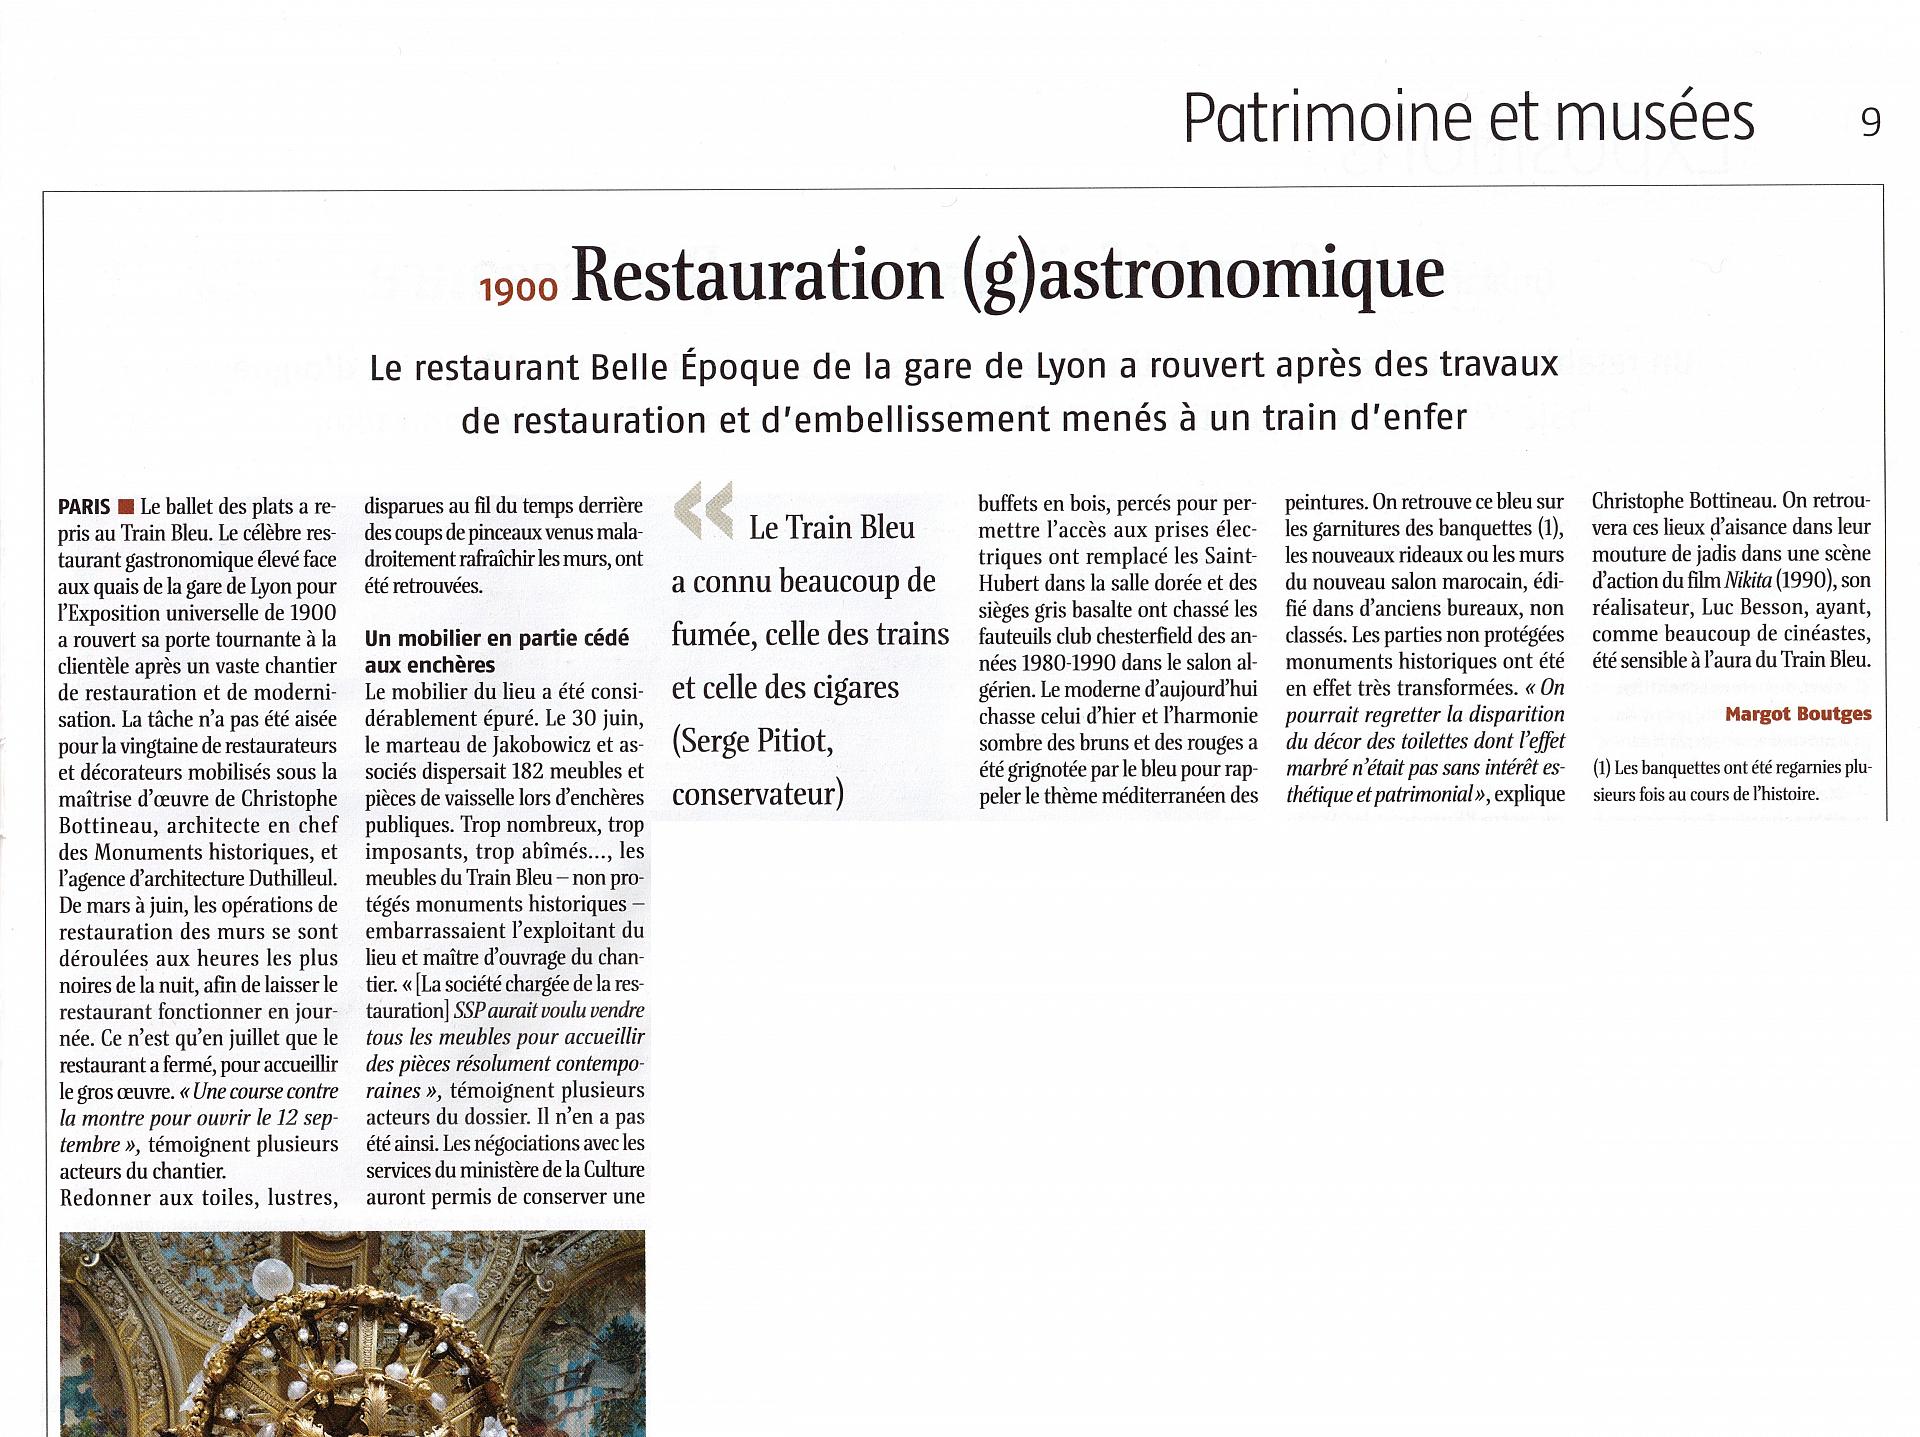 Le Journal des Arts n° 419 du 19 septembre au 2 octobre 2014, p. 9